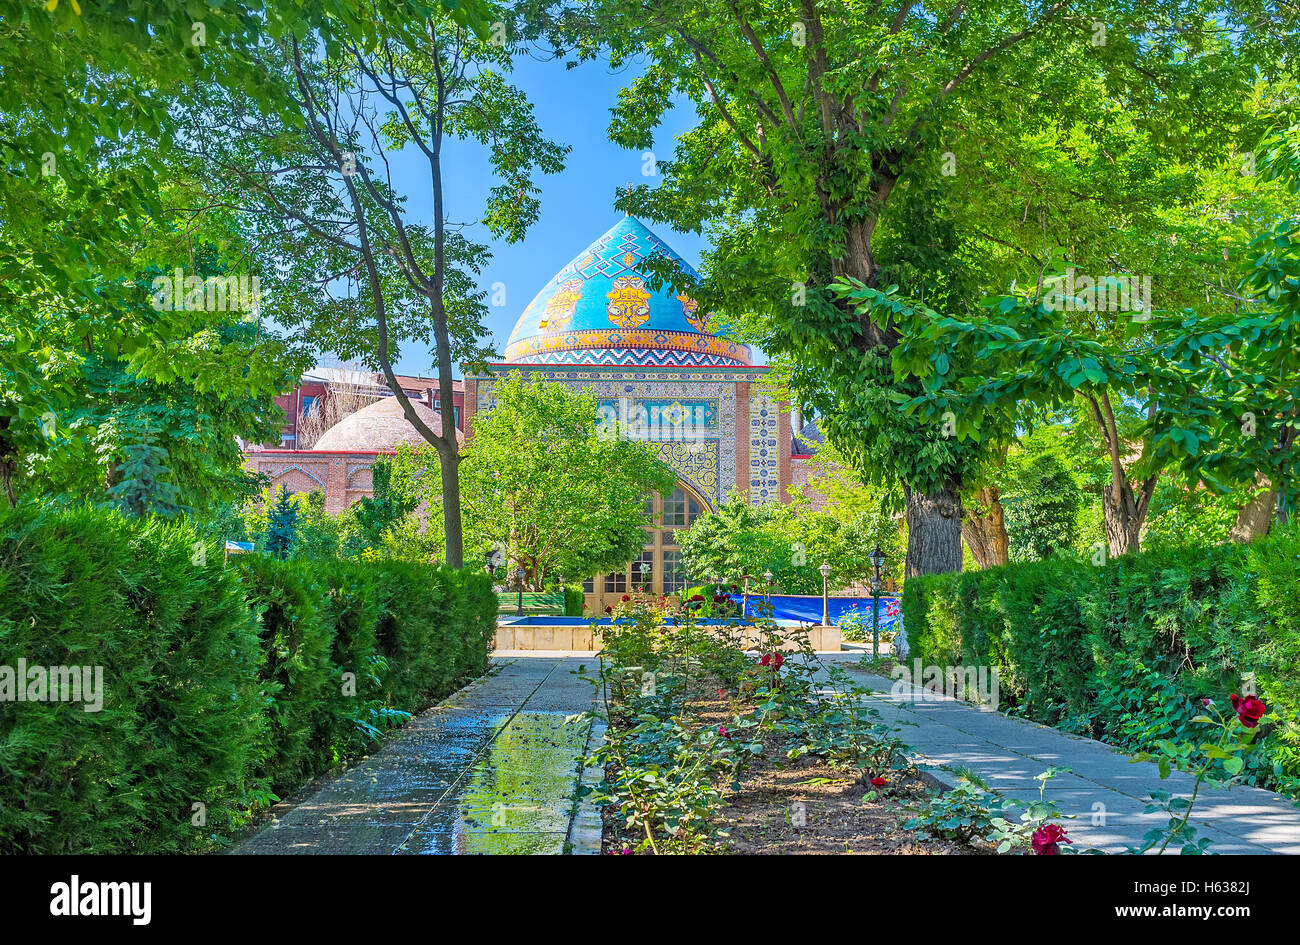 Die schattige Allee des Gartens führt zur blauen Moschee Shia, perfekt eingerichtet, mit bunten Kacheln, Yerevan, Armenien. Stockfoto